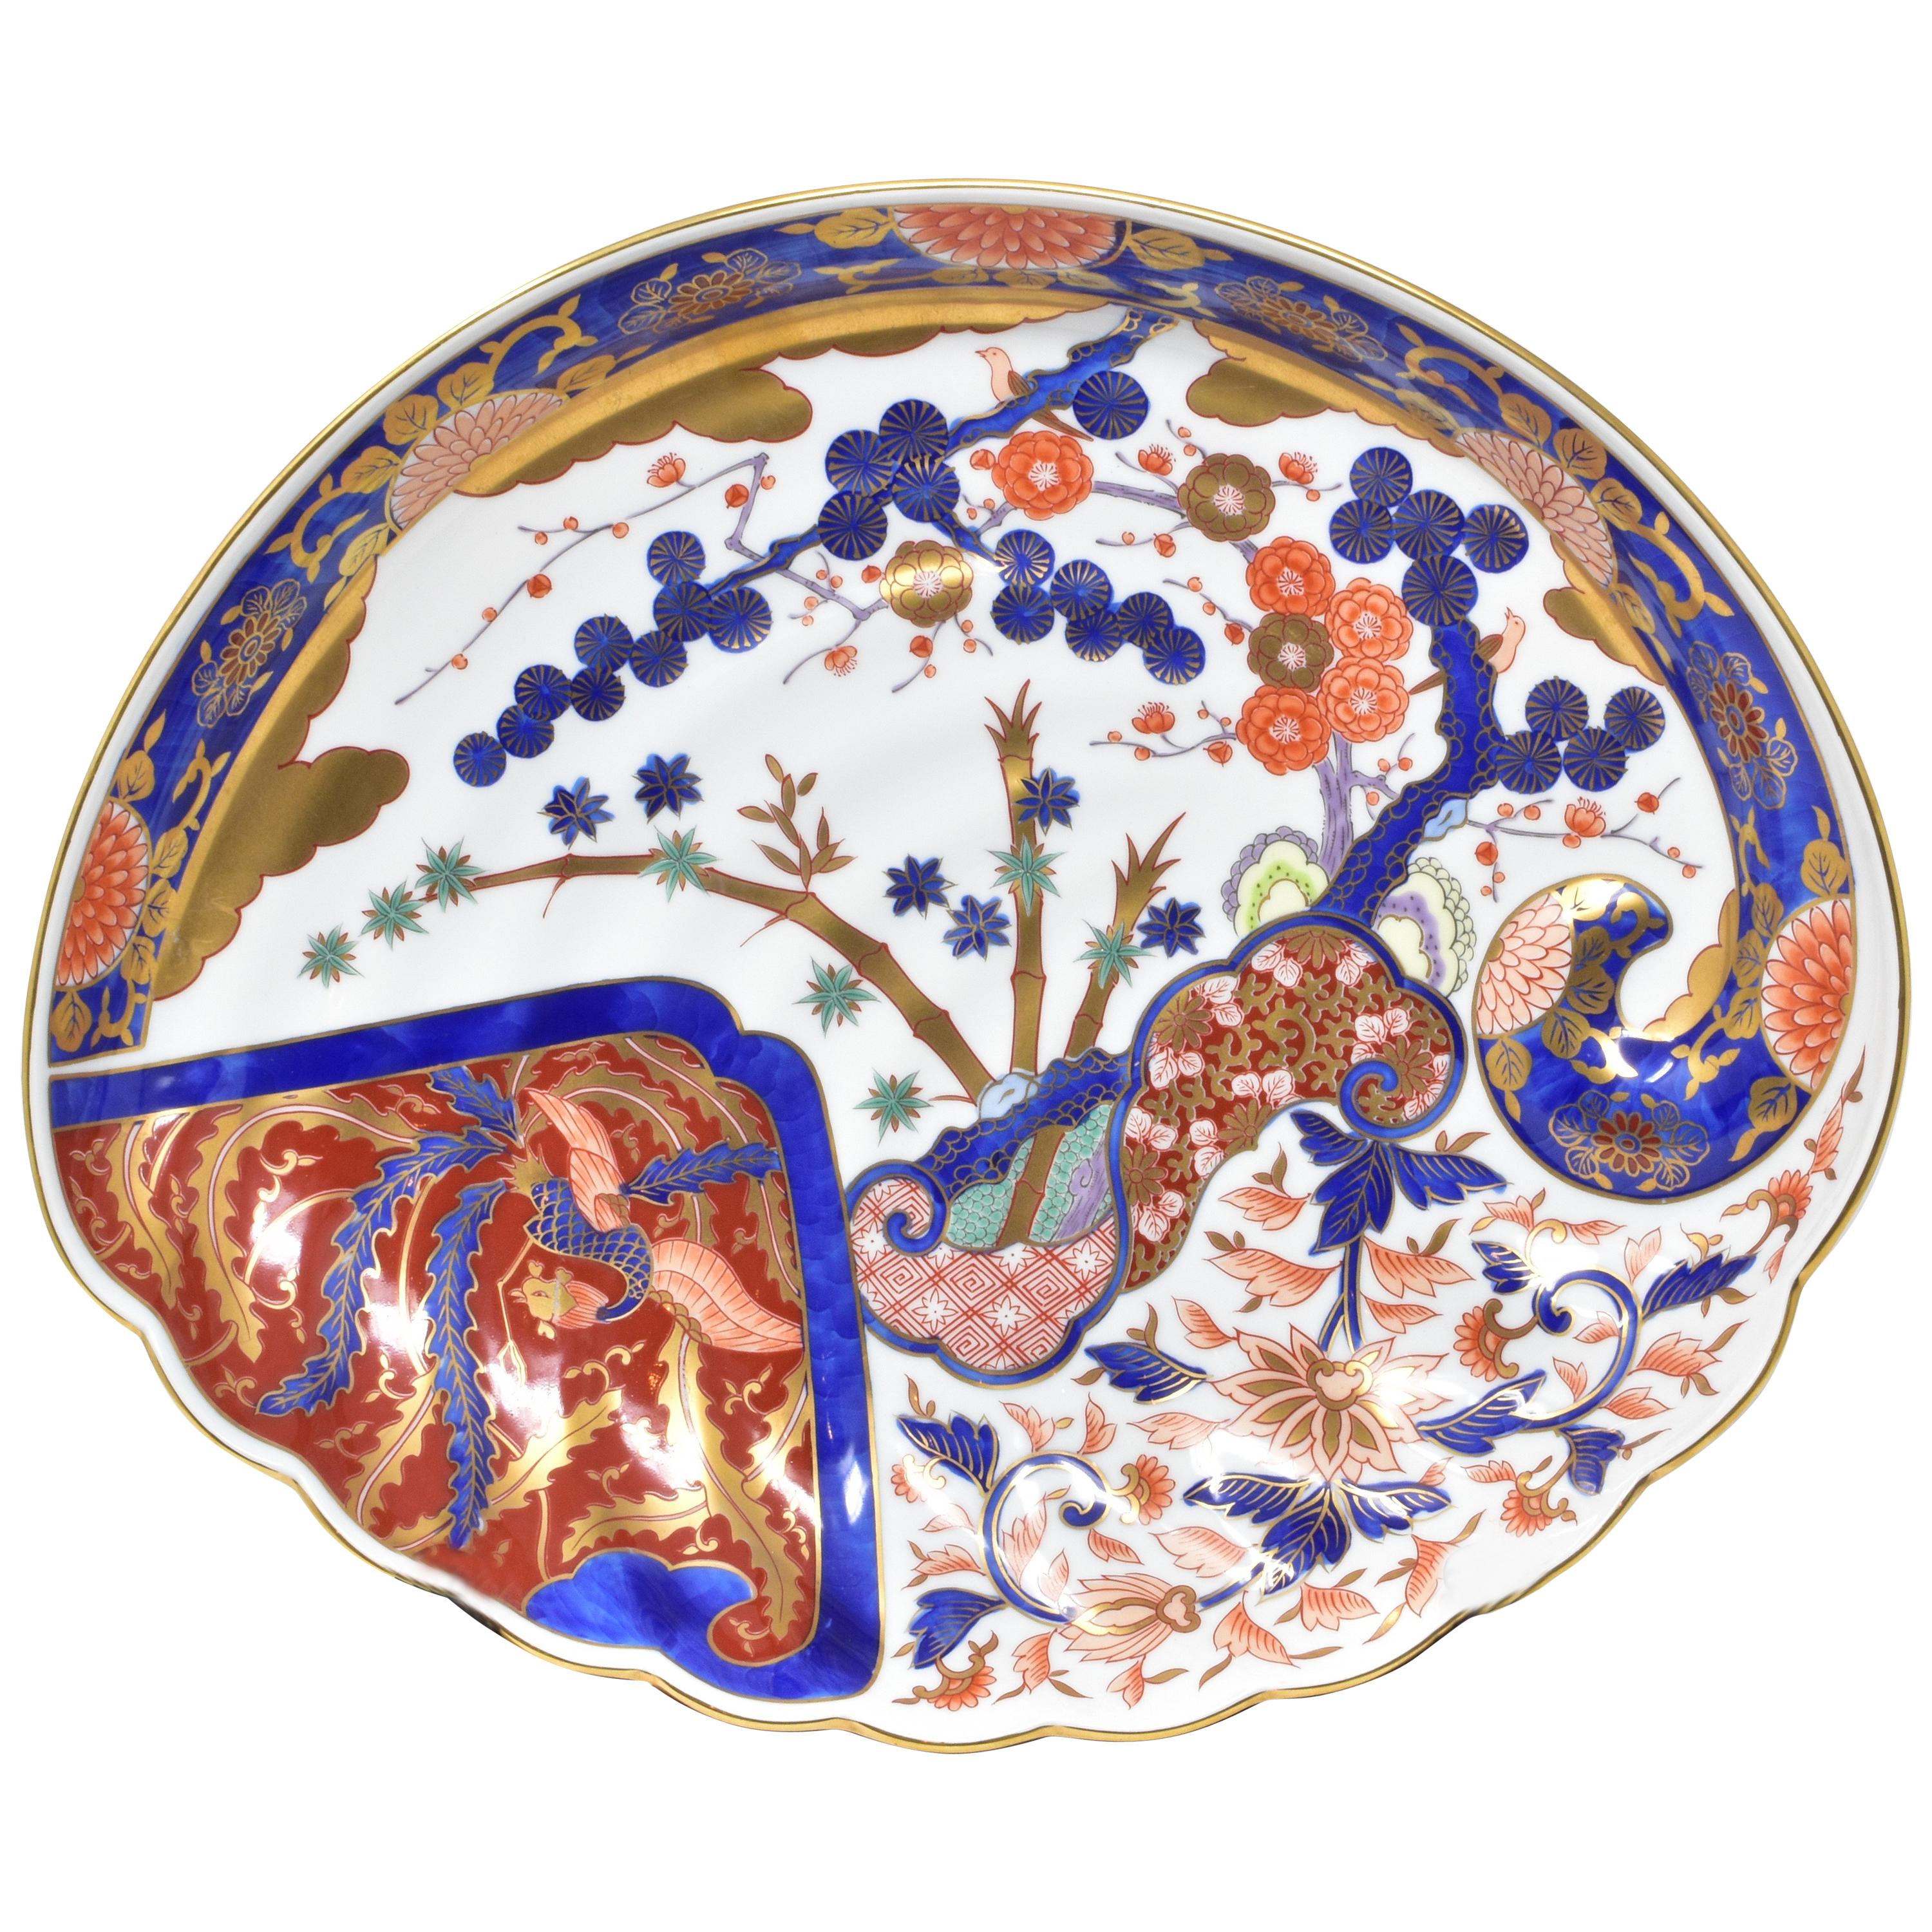 Einzigartiges zeitgenössisches japanisches Ladegerät im Ko-Imari-Stil (altes Imari), atemberaubend vergoldet und handbemalt auf einem exquisiten muschelförmigen Porzellan, hergestellt und signiert von einem renommierten Brenner der Region